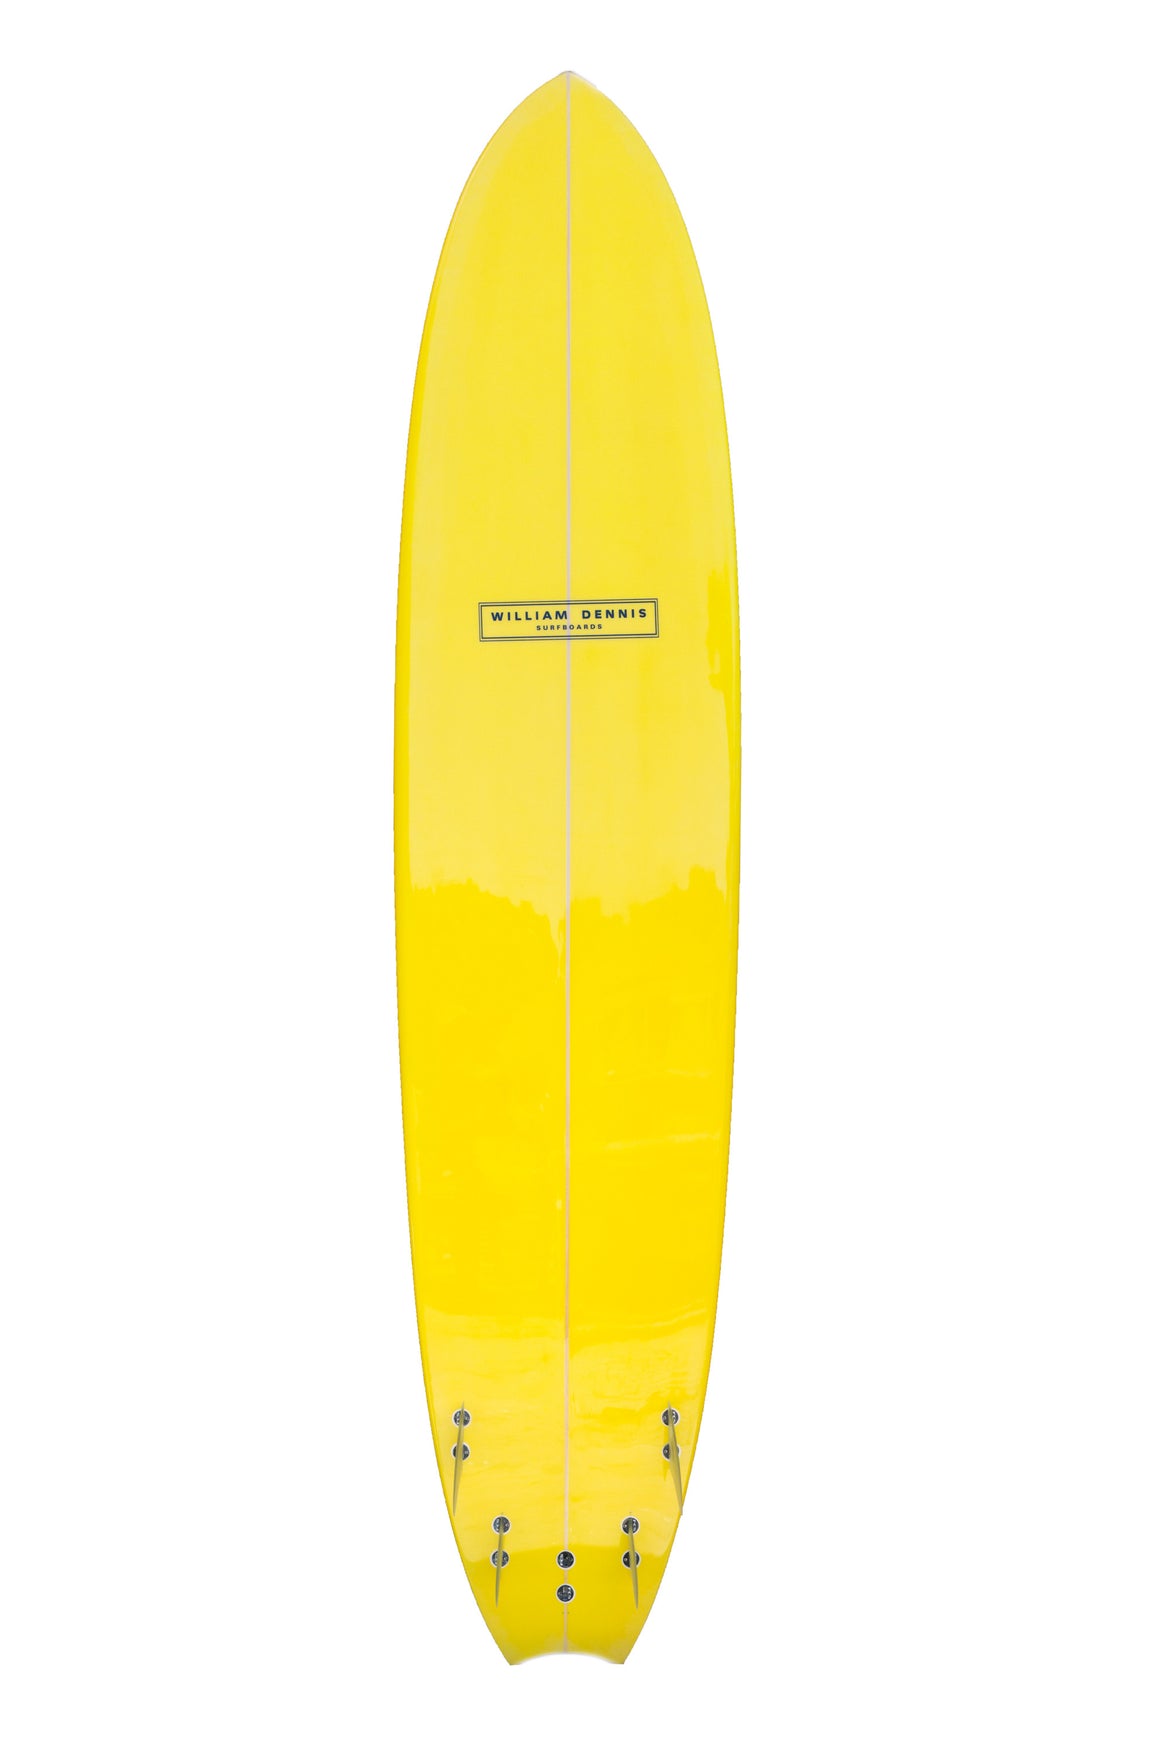 William Dennis Custom "Quad Mega Speed" Longboard - Ventura Surf Shop